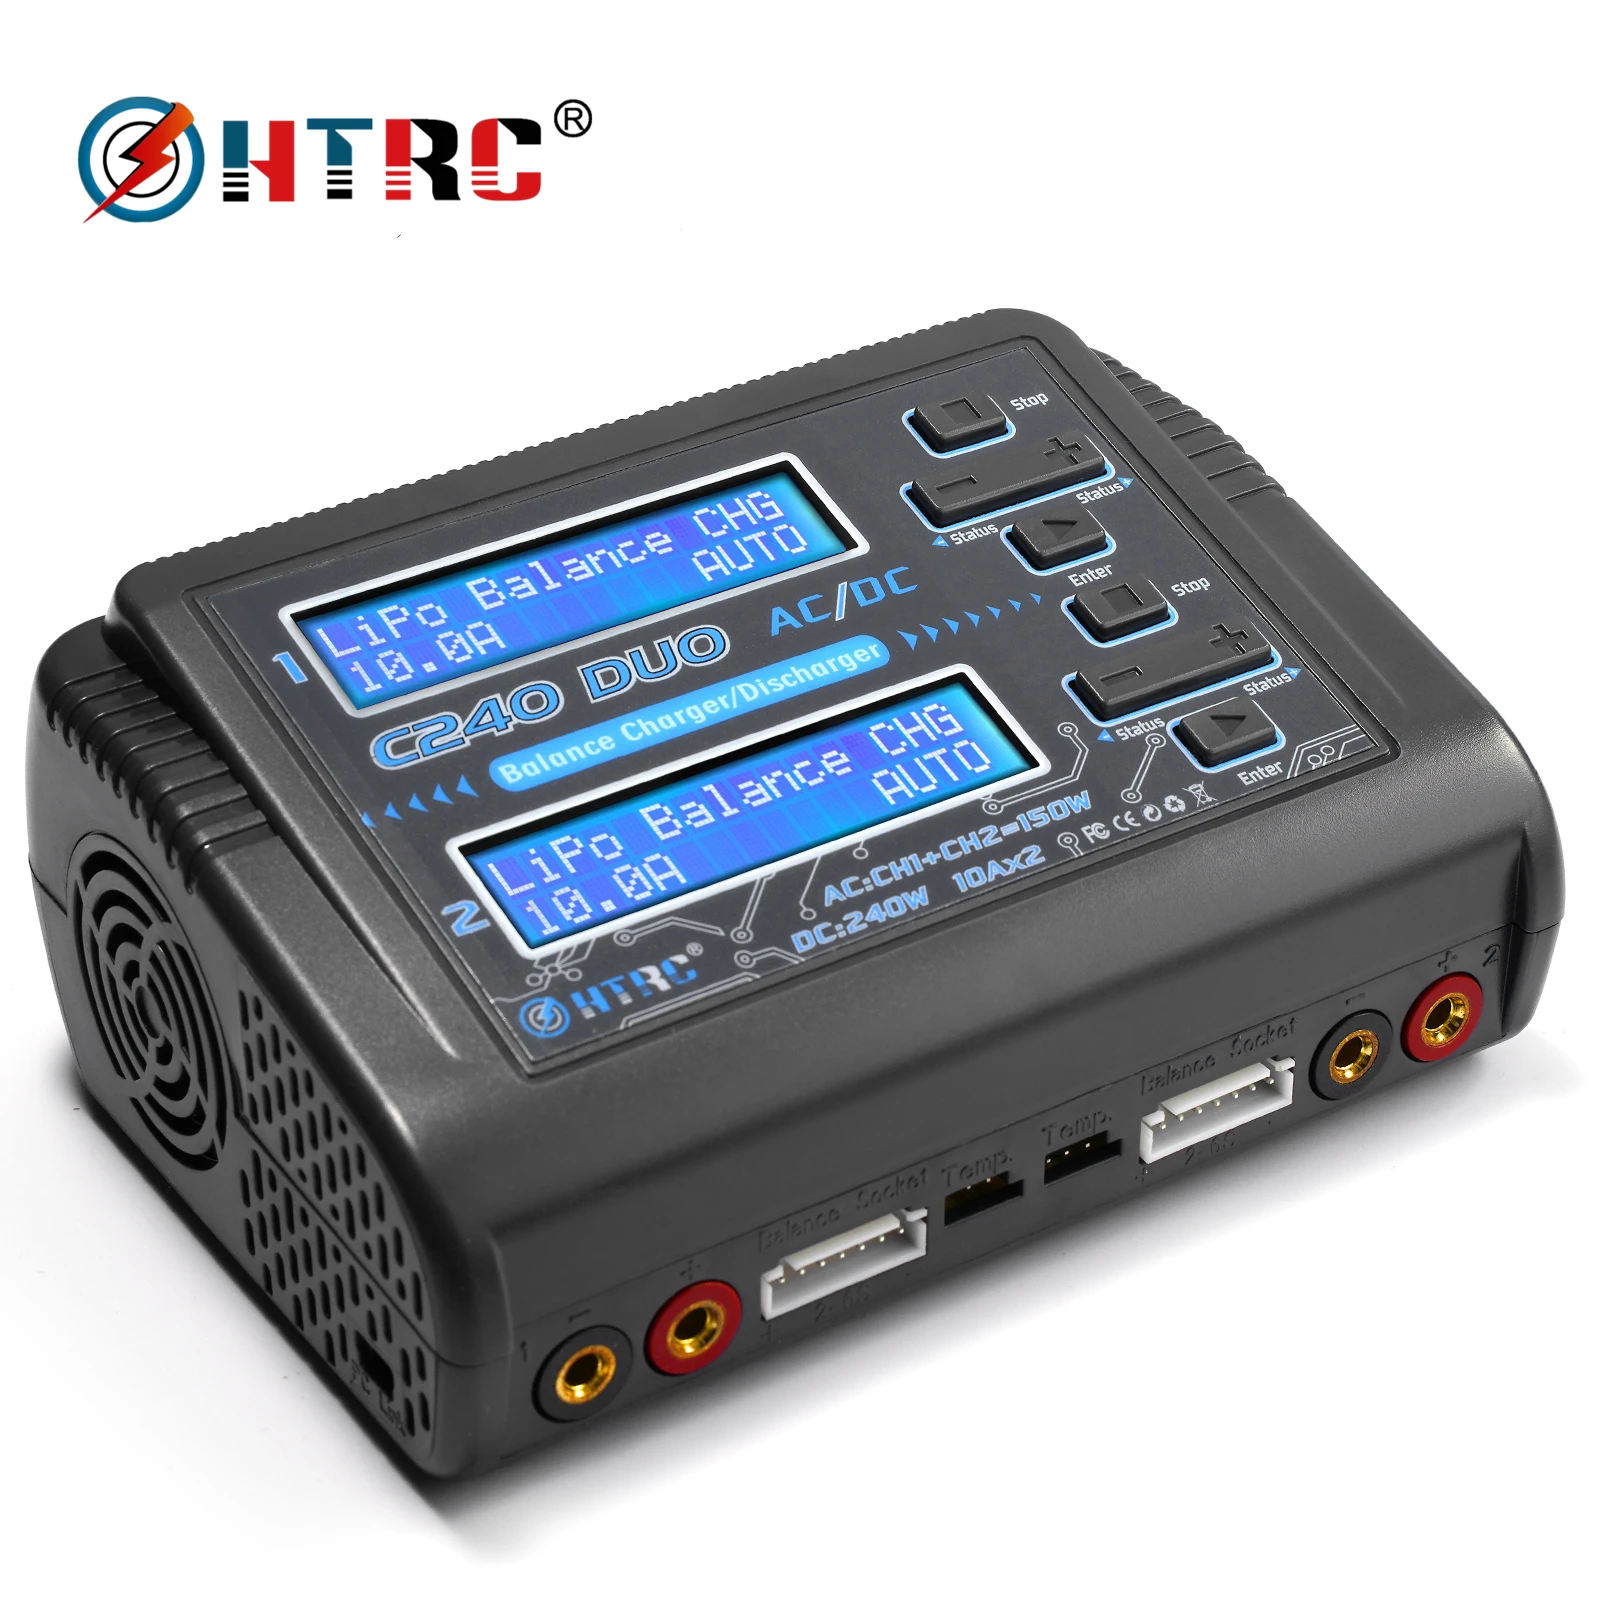 

Зарядное устройство HTRC lipo C240 duo AC/150 Вт DC/240 Вт, Двухканальное разрядное устройство 10 А для LiHV LiFe Lilon NiCd NiMh Pb, балансирующее зарядное устройство